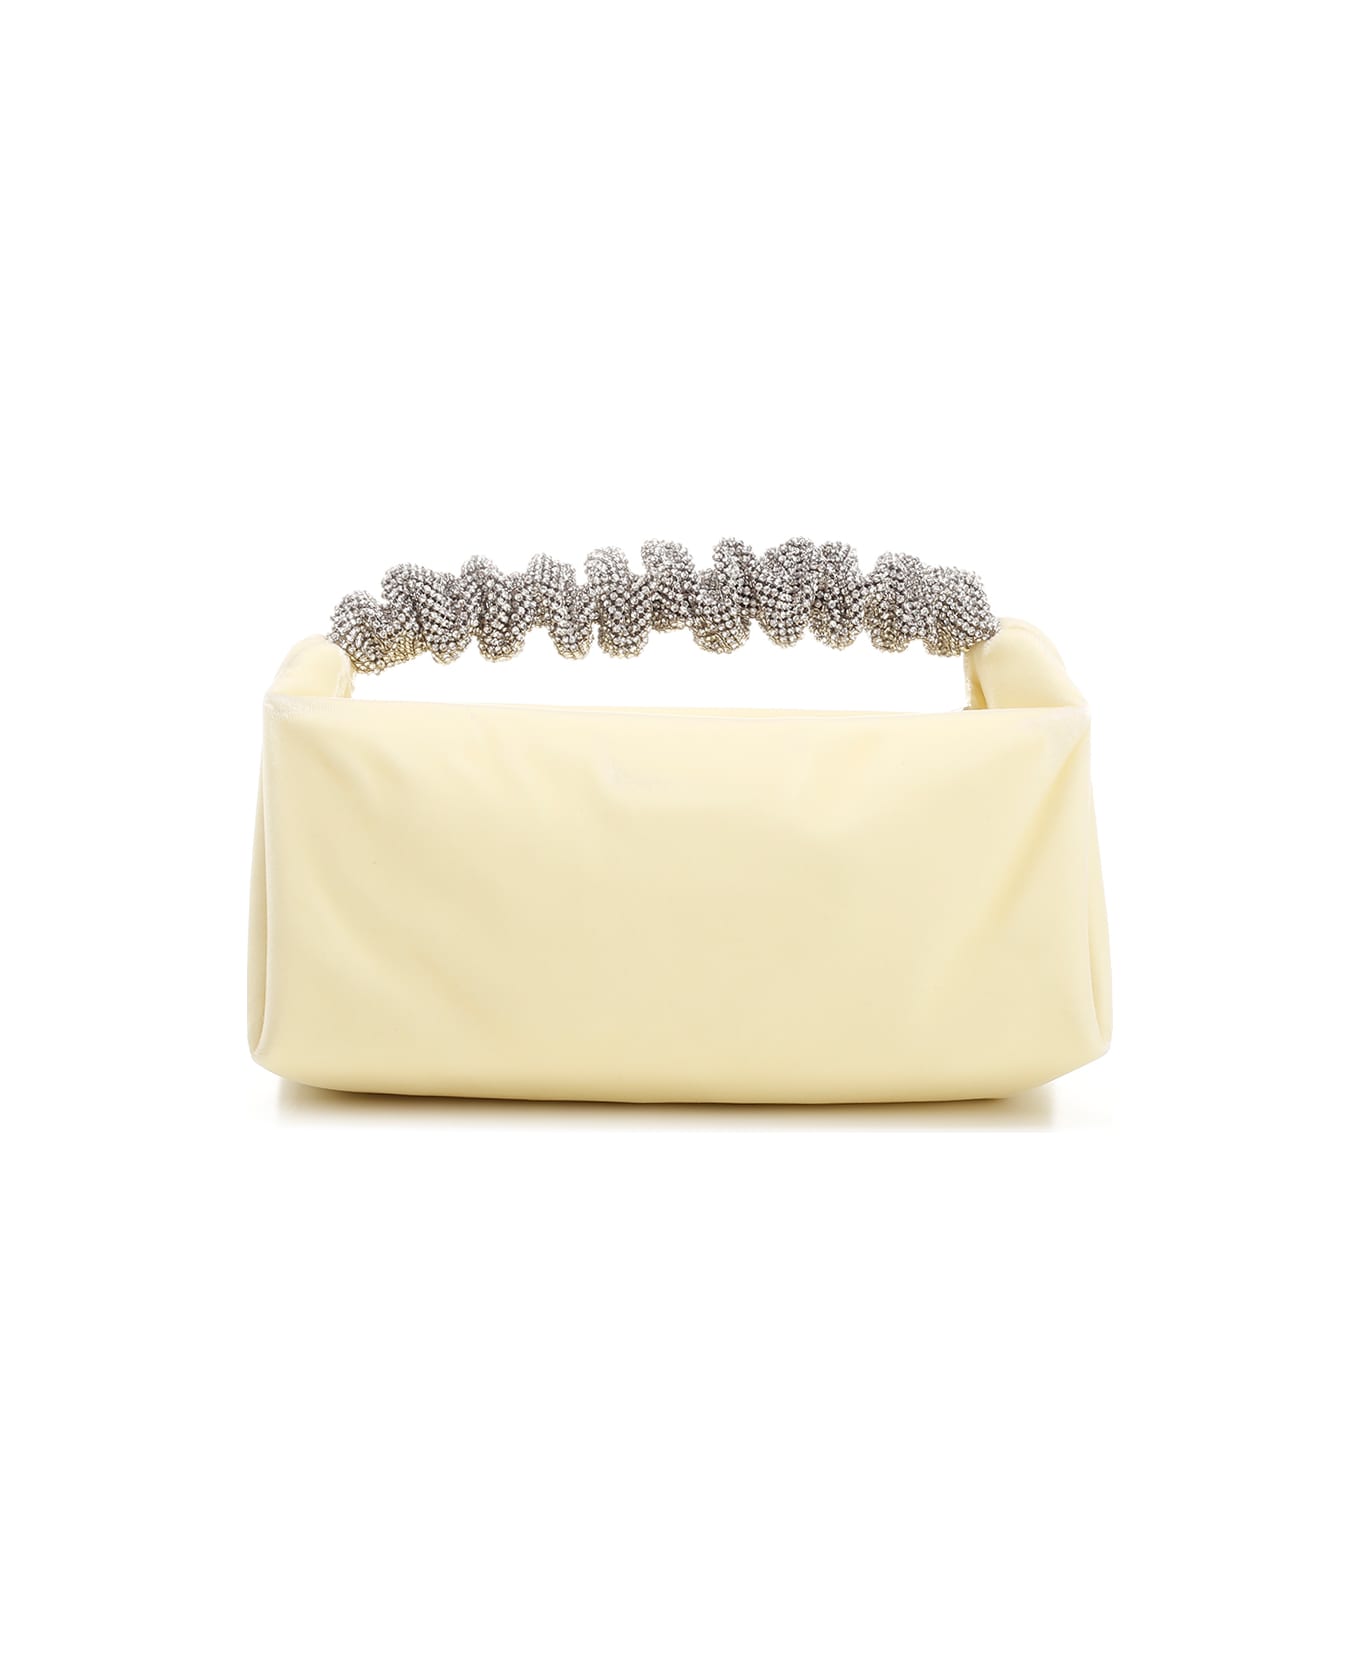 Alexander Wang 'scrunchie' Handbag - A Vanilla トートバッグ